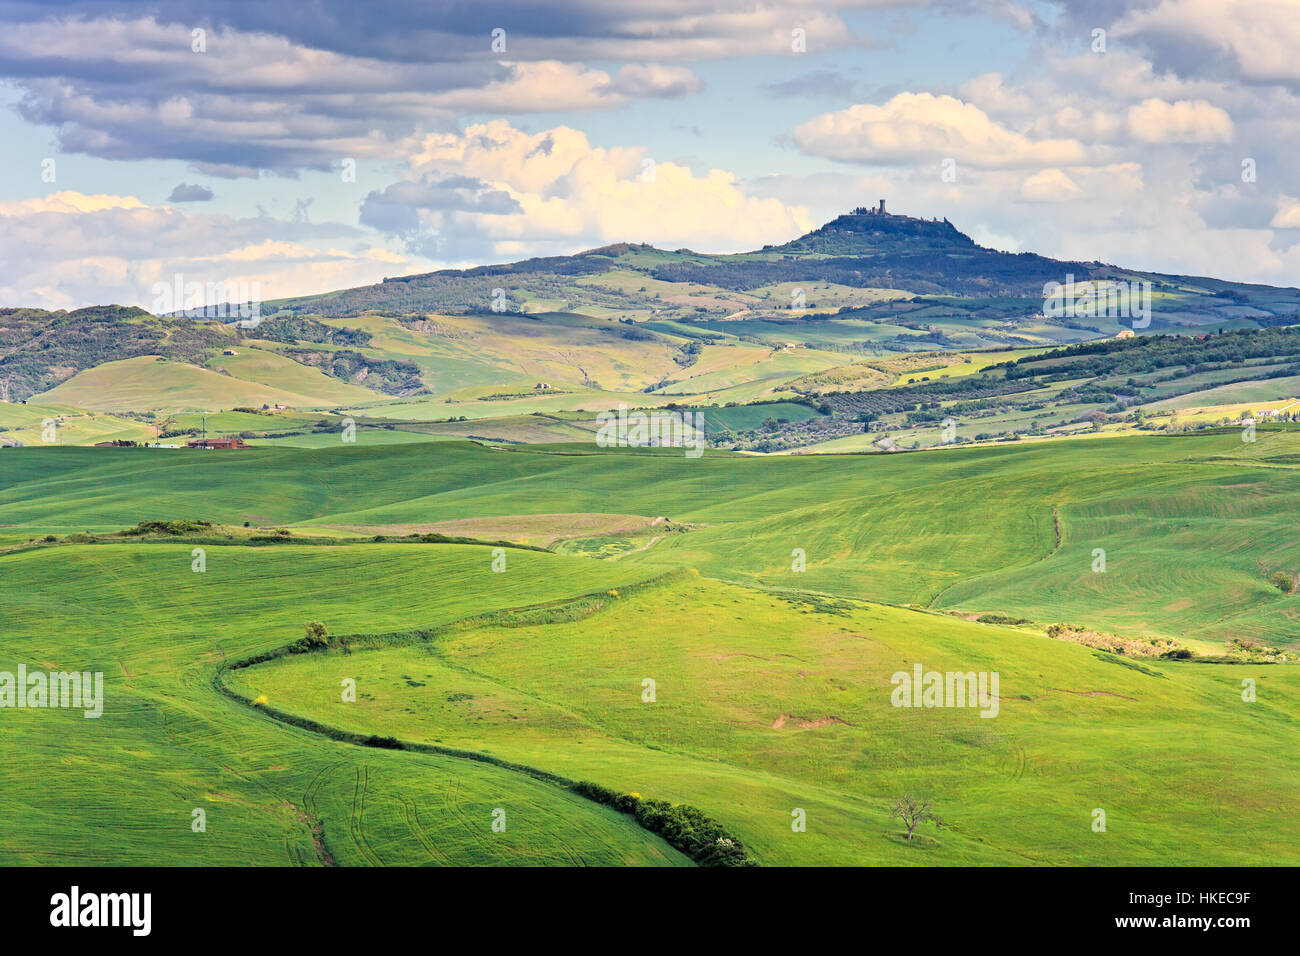 Tuscany, Radicofani village on hilltop, farmland and green fields. Val d Orcia, Italy, Europe. Stock Photo